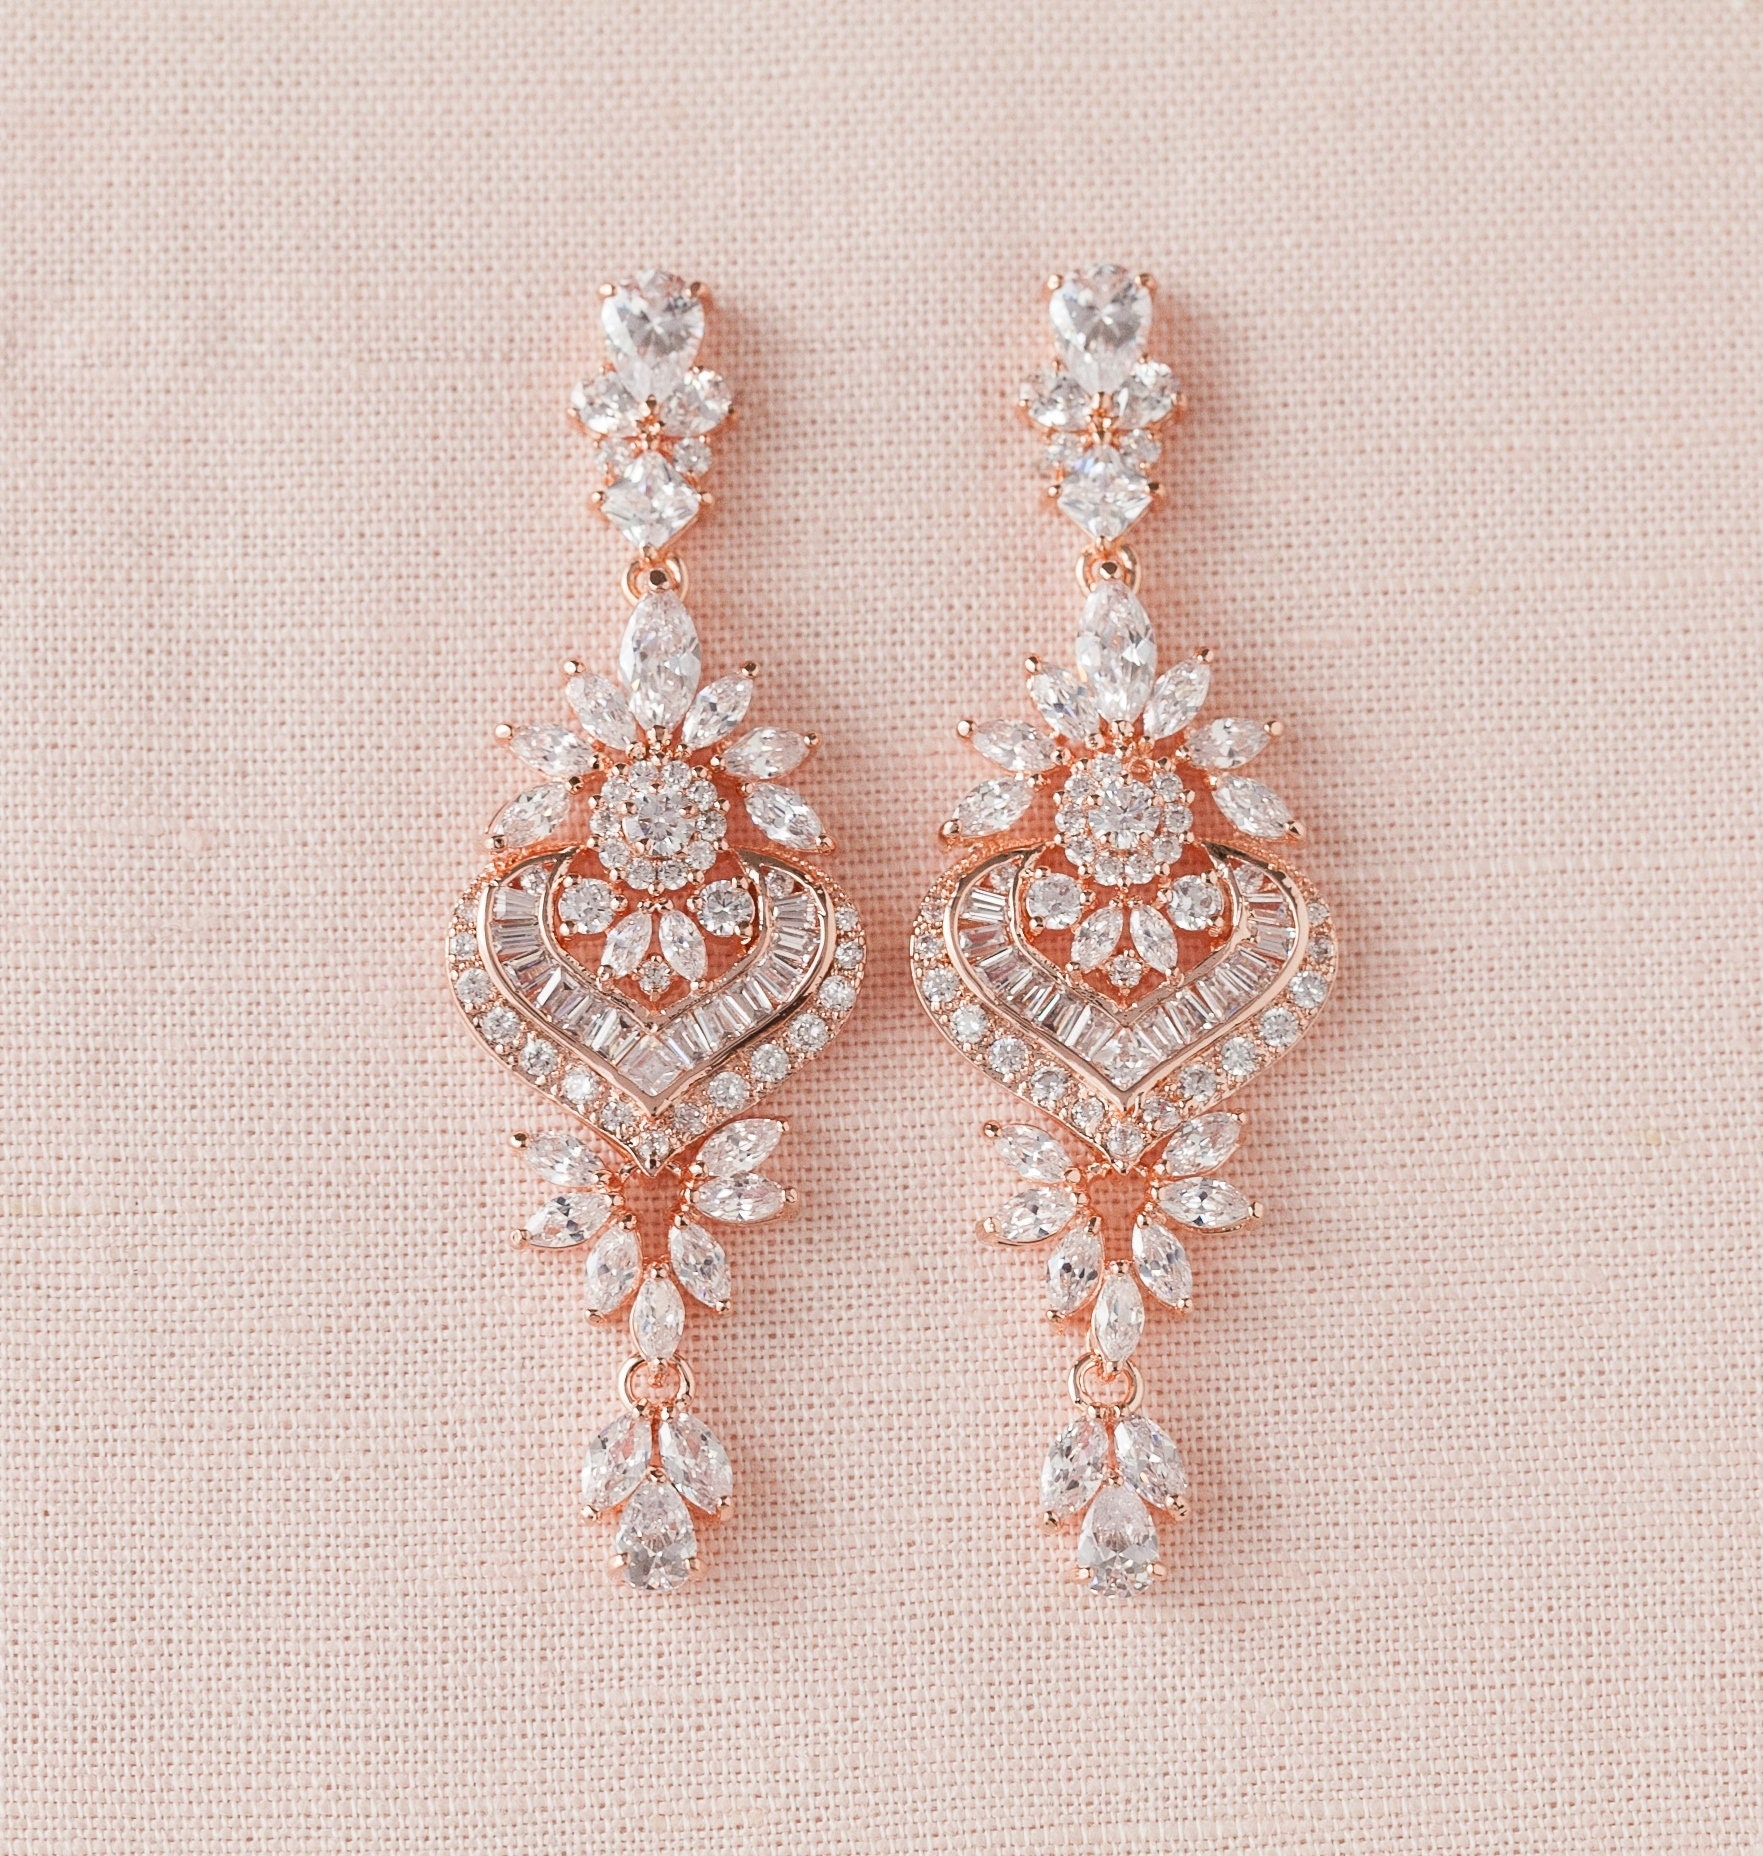 Bridal Earrings Chandelier Crystal Wedding Earrings Rose Etsy